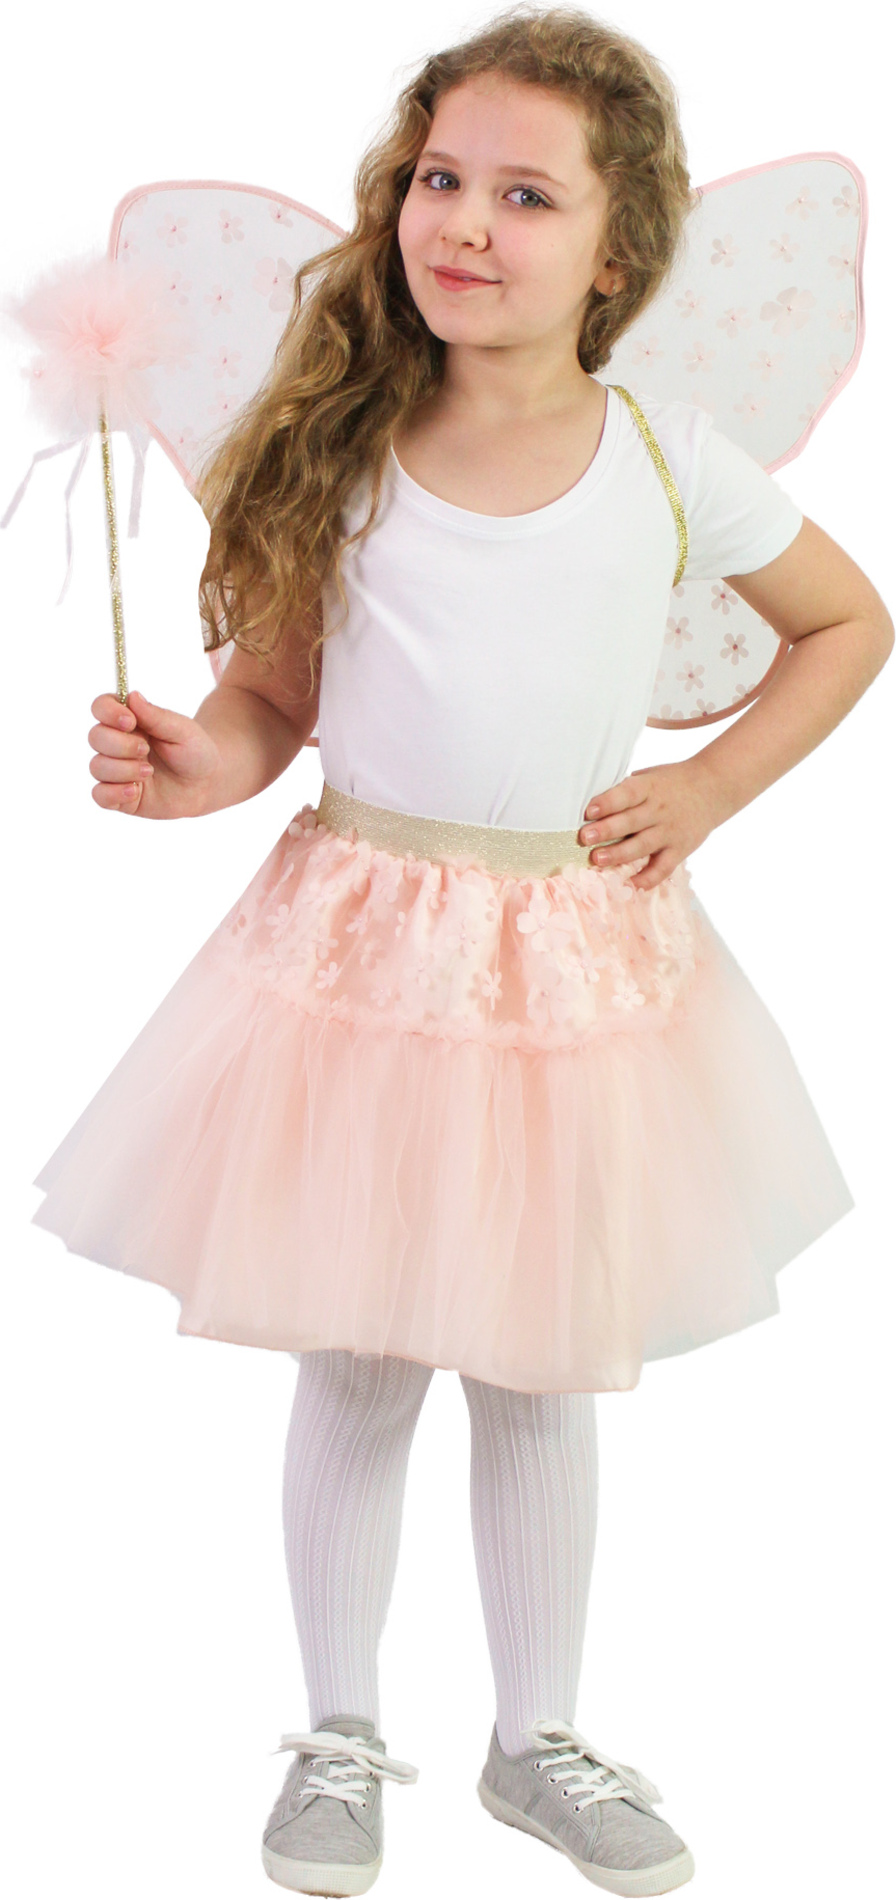 Dětský kostým tutu sukně růžová květinová víla s hůlkou a křídly